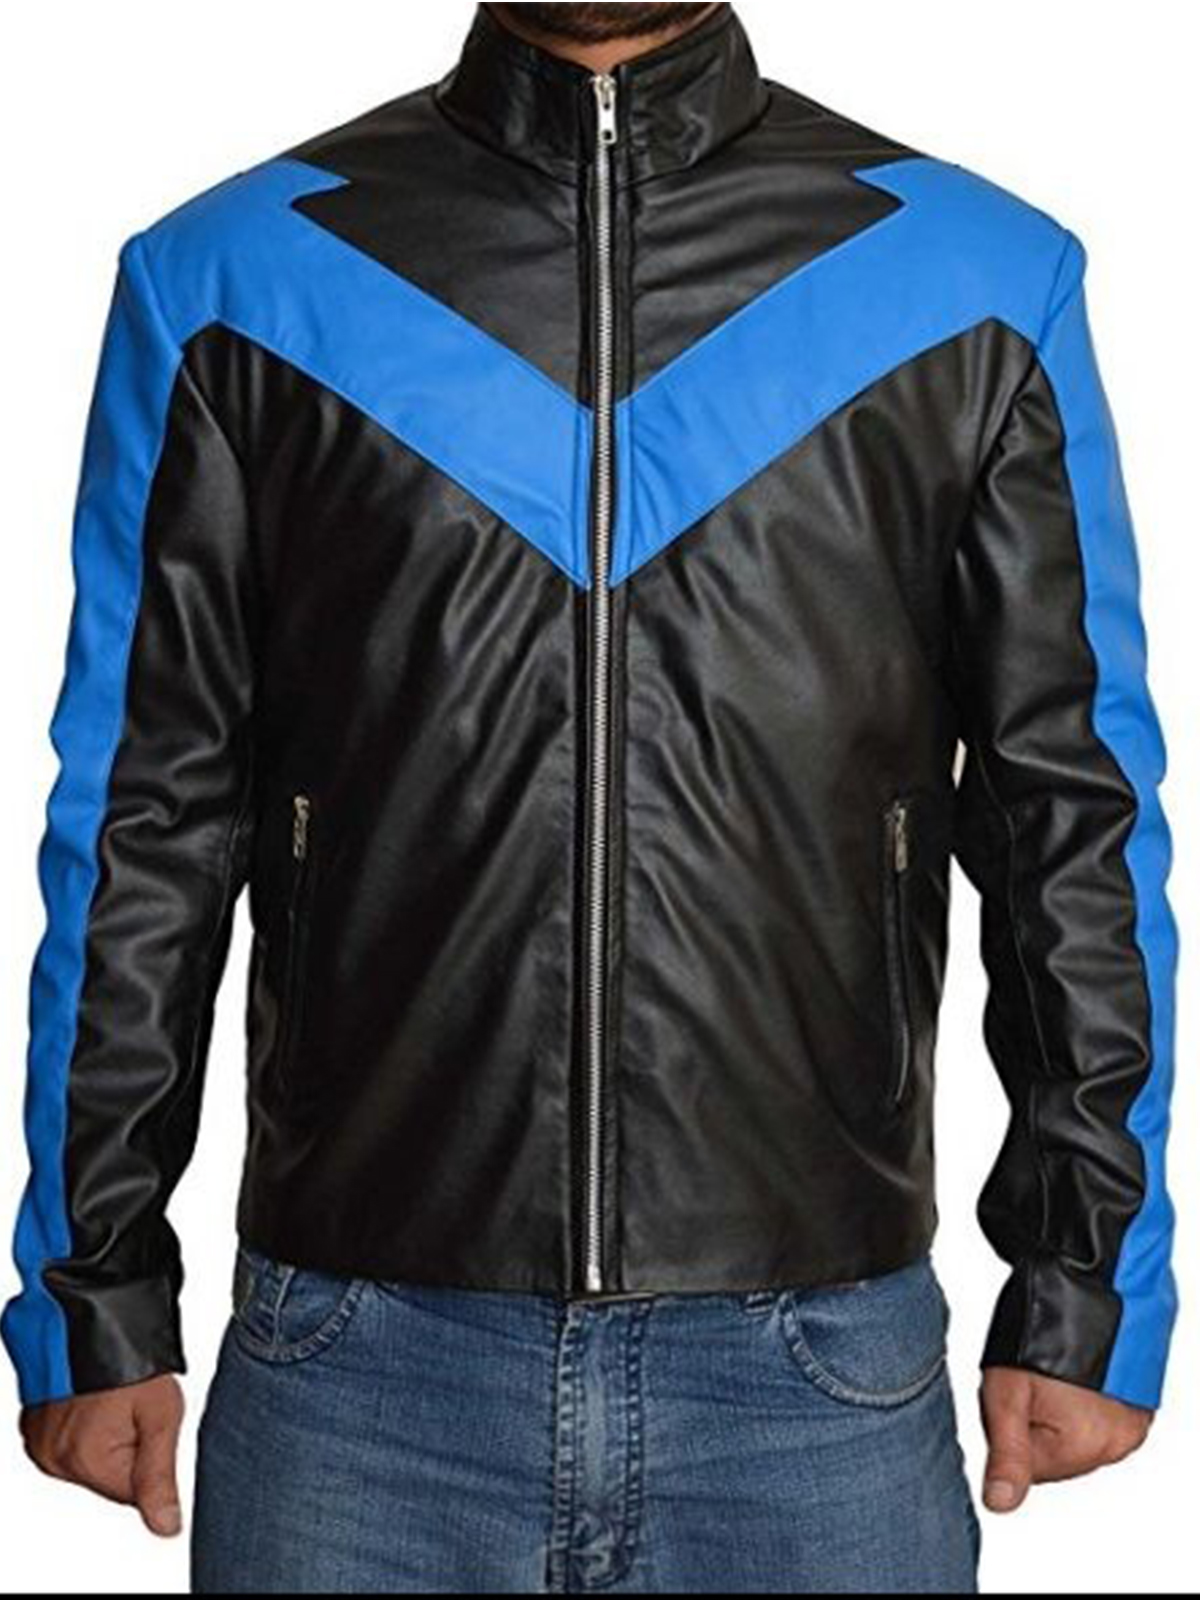 Danny Shepherd Nightwing Jacket